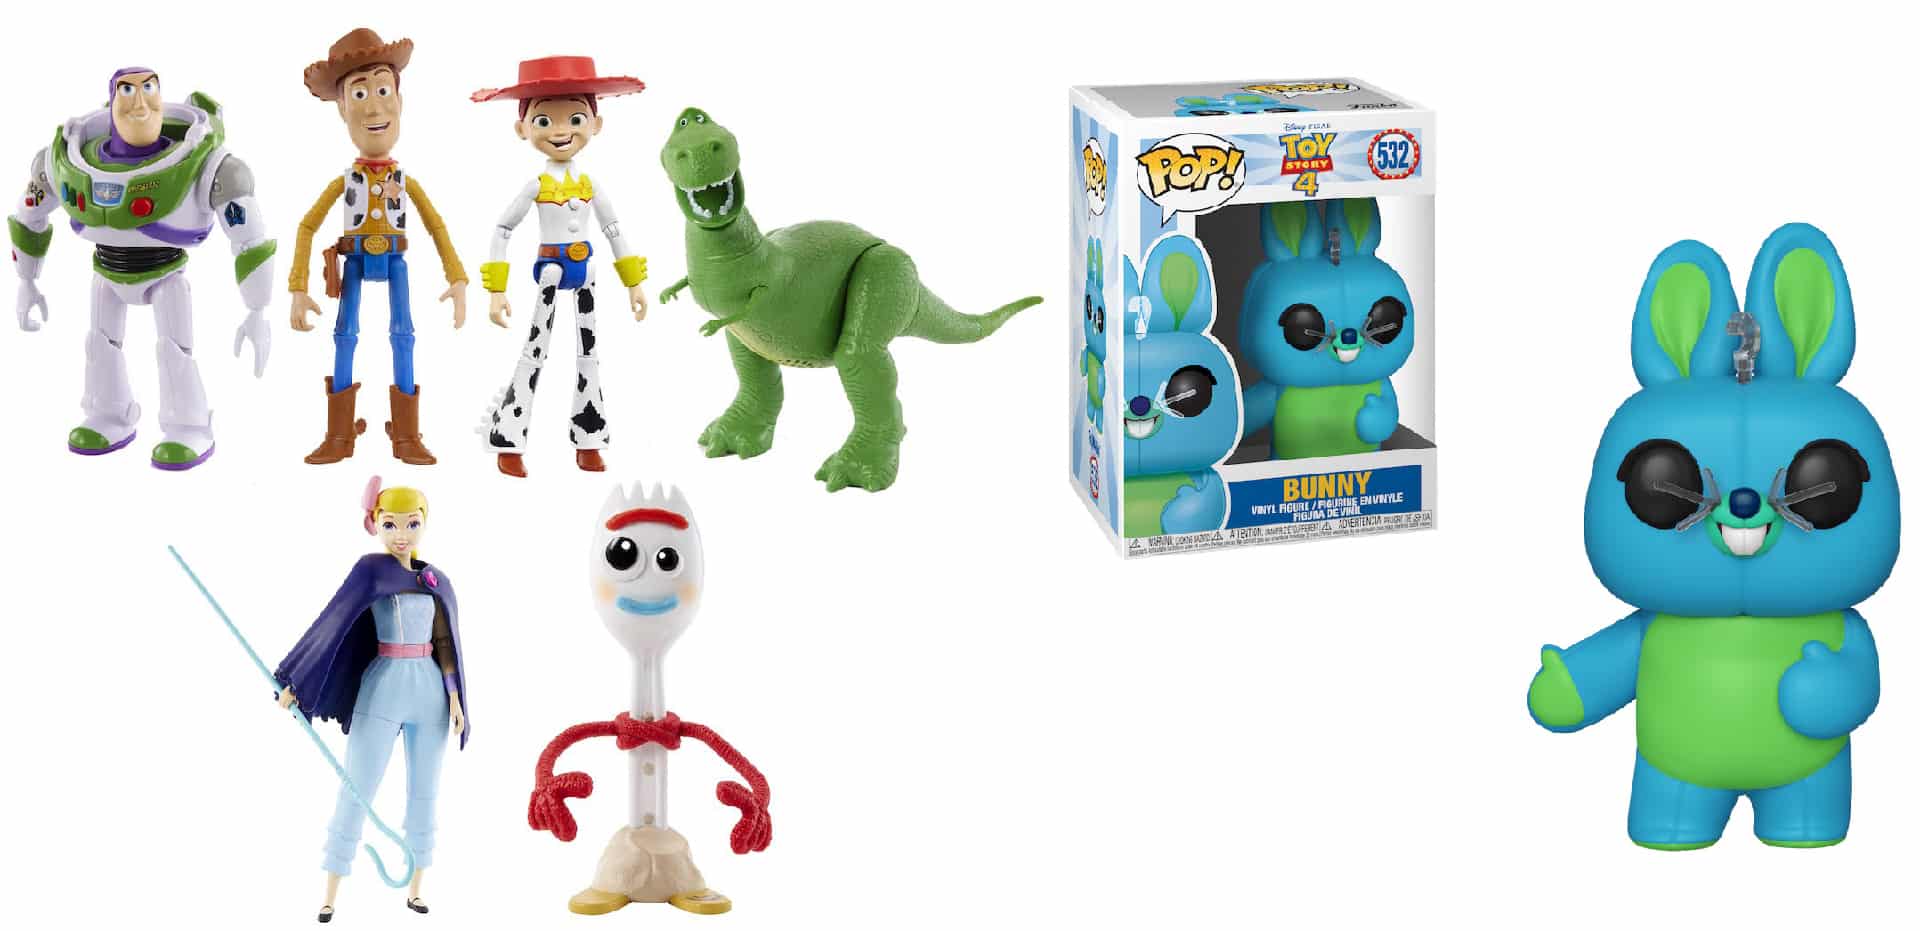 Toy Story 4: lanciata una nuova collezione di prodotti dal film Pixar